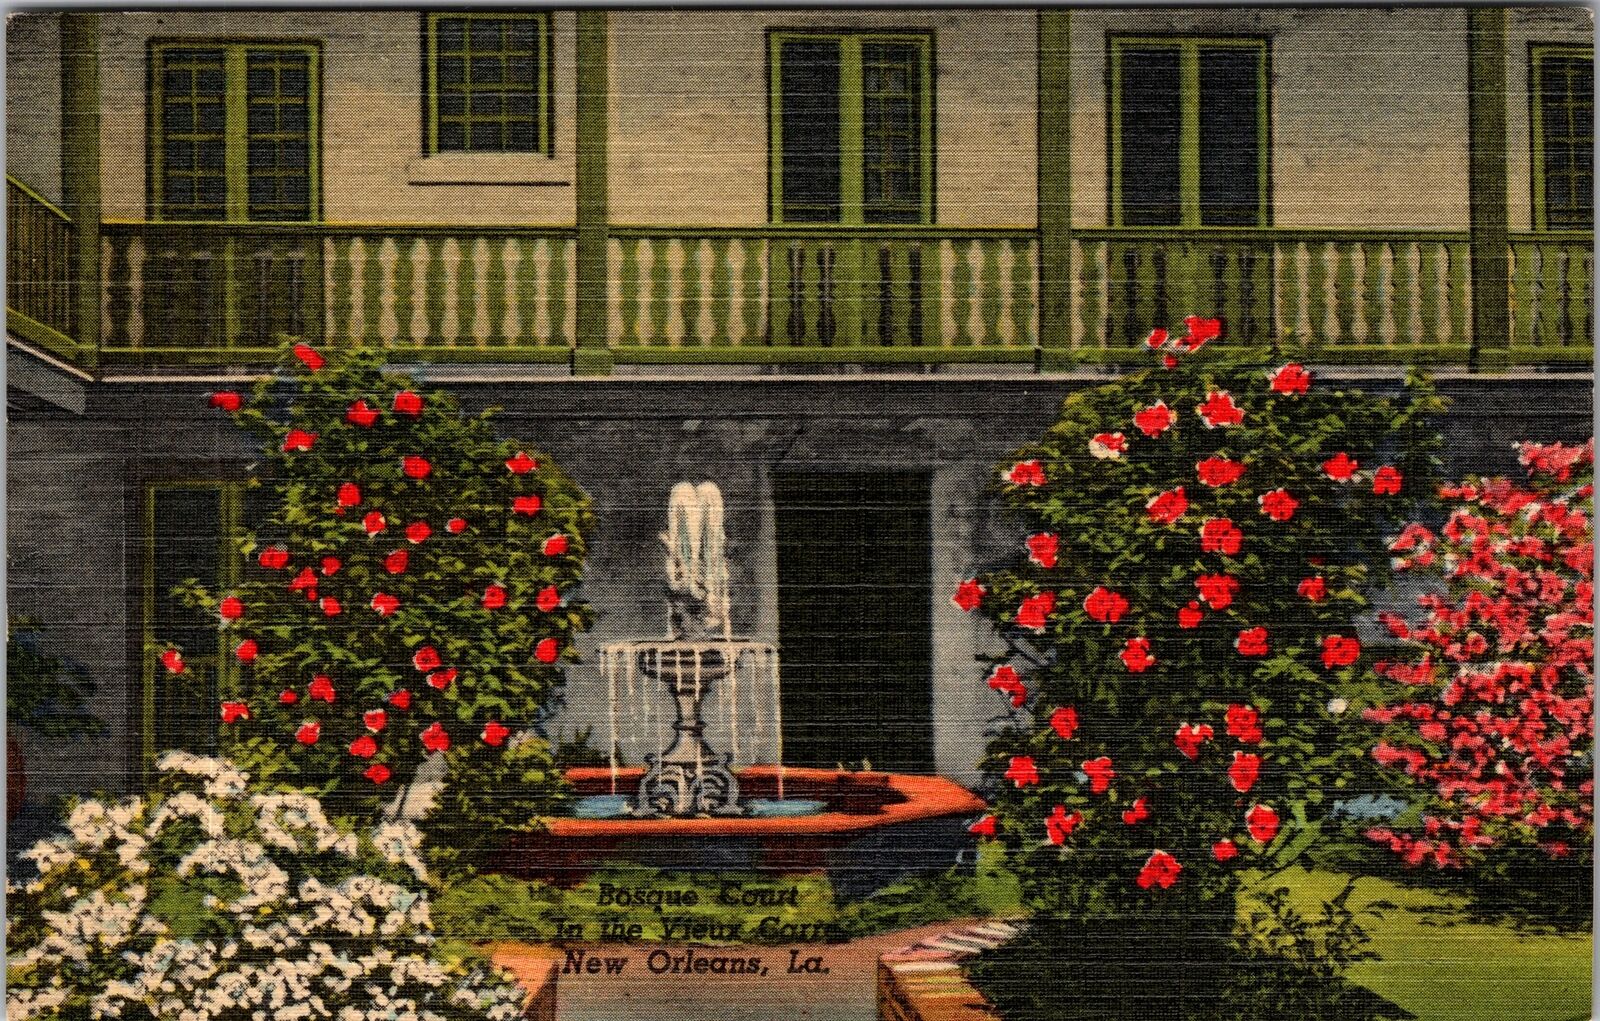 New Orleans LA-Louisiana, Bosque House Courtyard, Vieux Carre Vintage Postcard